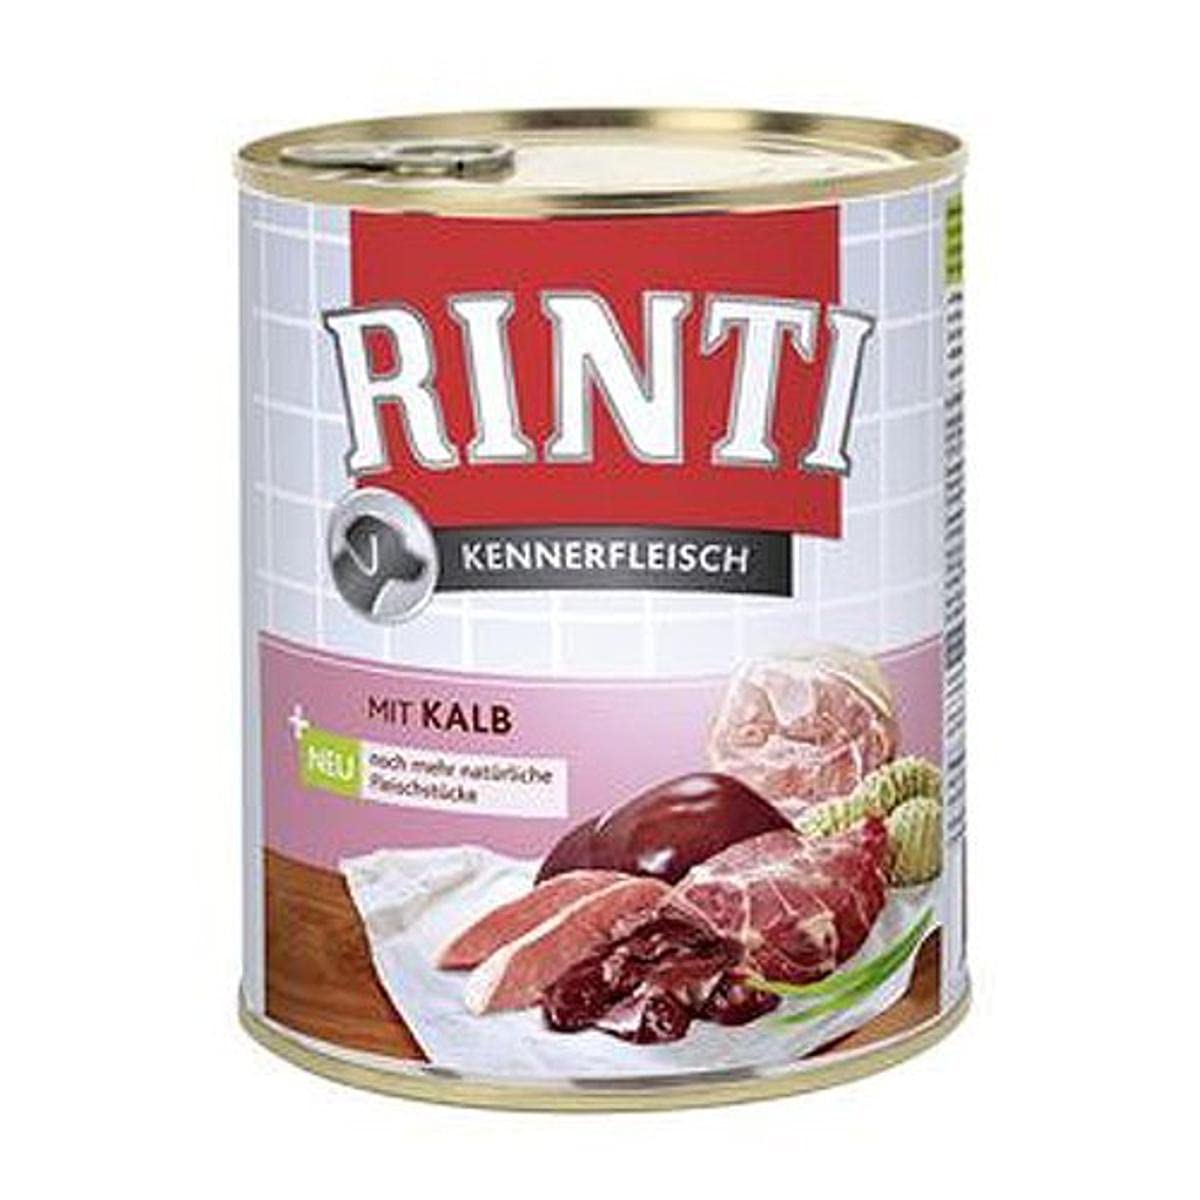 Rinti Pur Kennerfleisch Kalb für Hunde, 12er Pack (12 x 800 g)